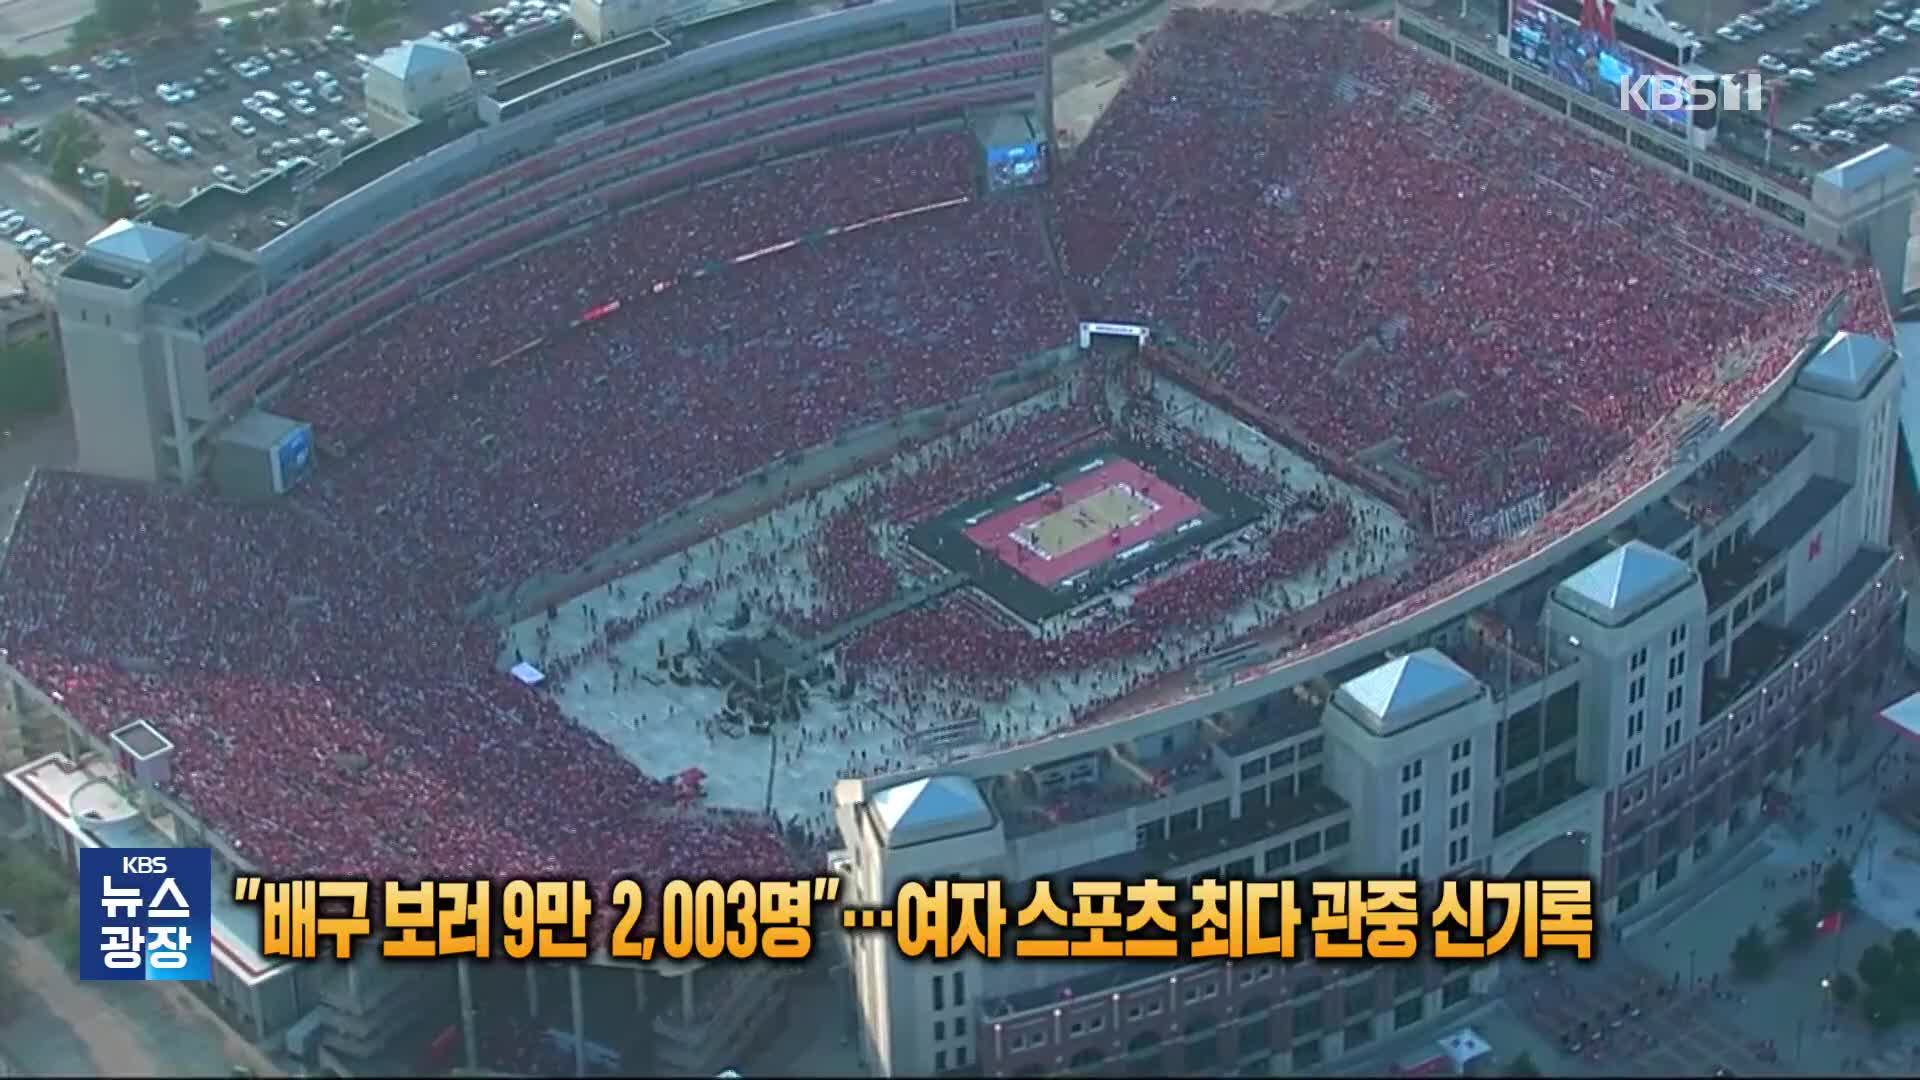 [잇슈 SNS] “배구보러 9만 2003명”…여자 스포츠 최다 관중 신기록